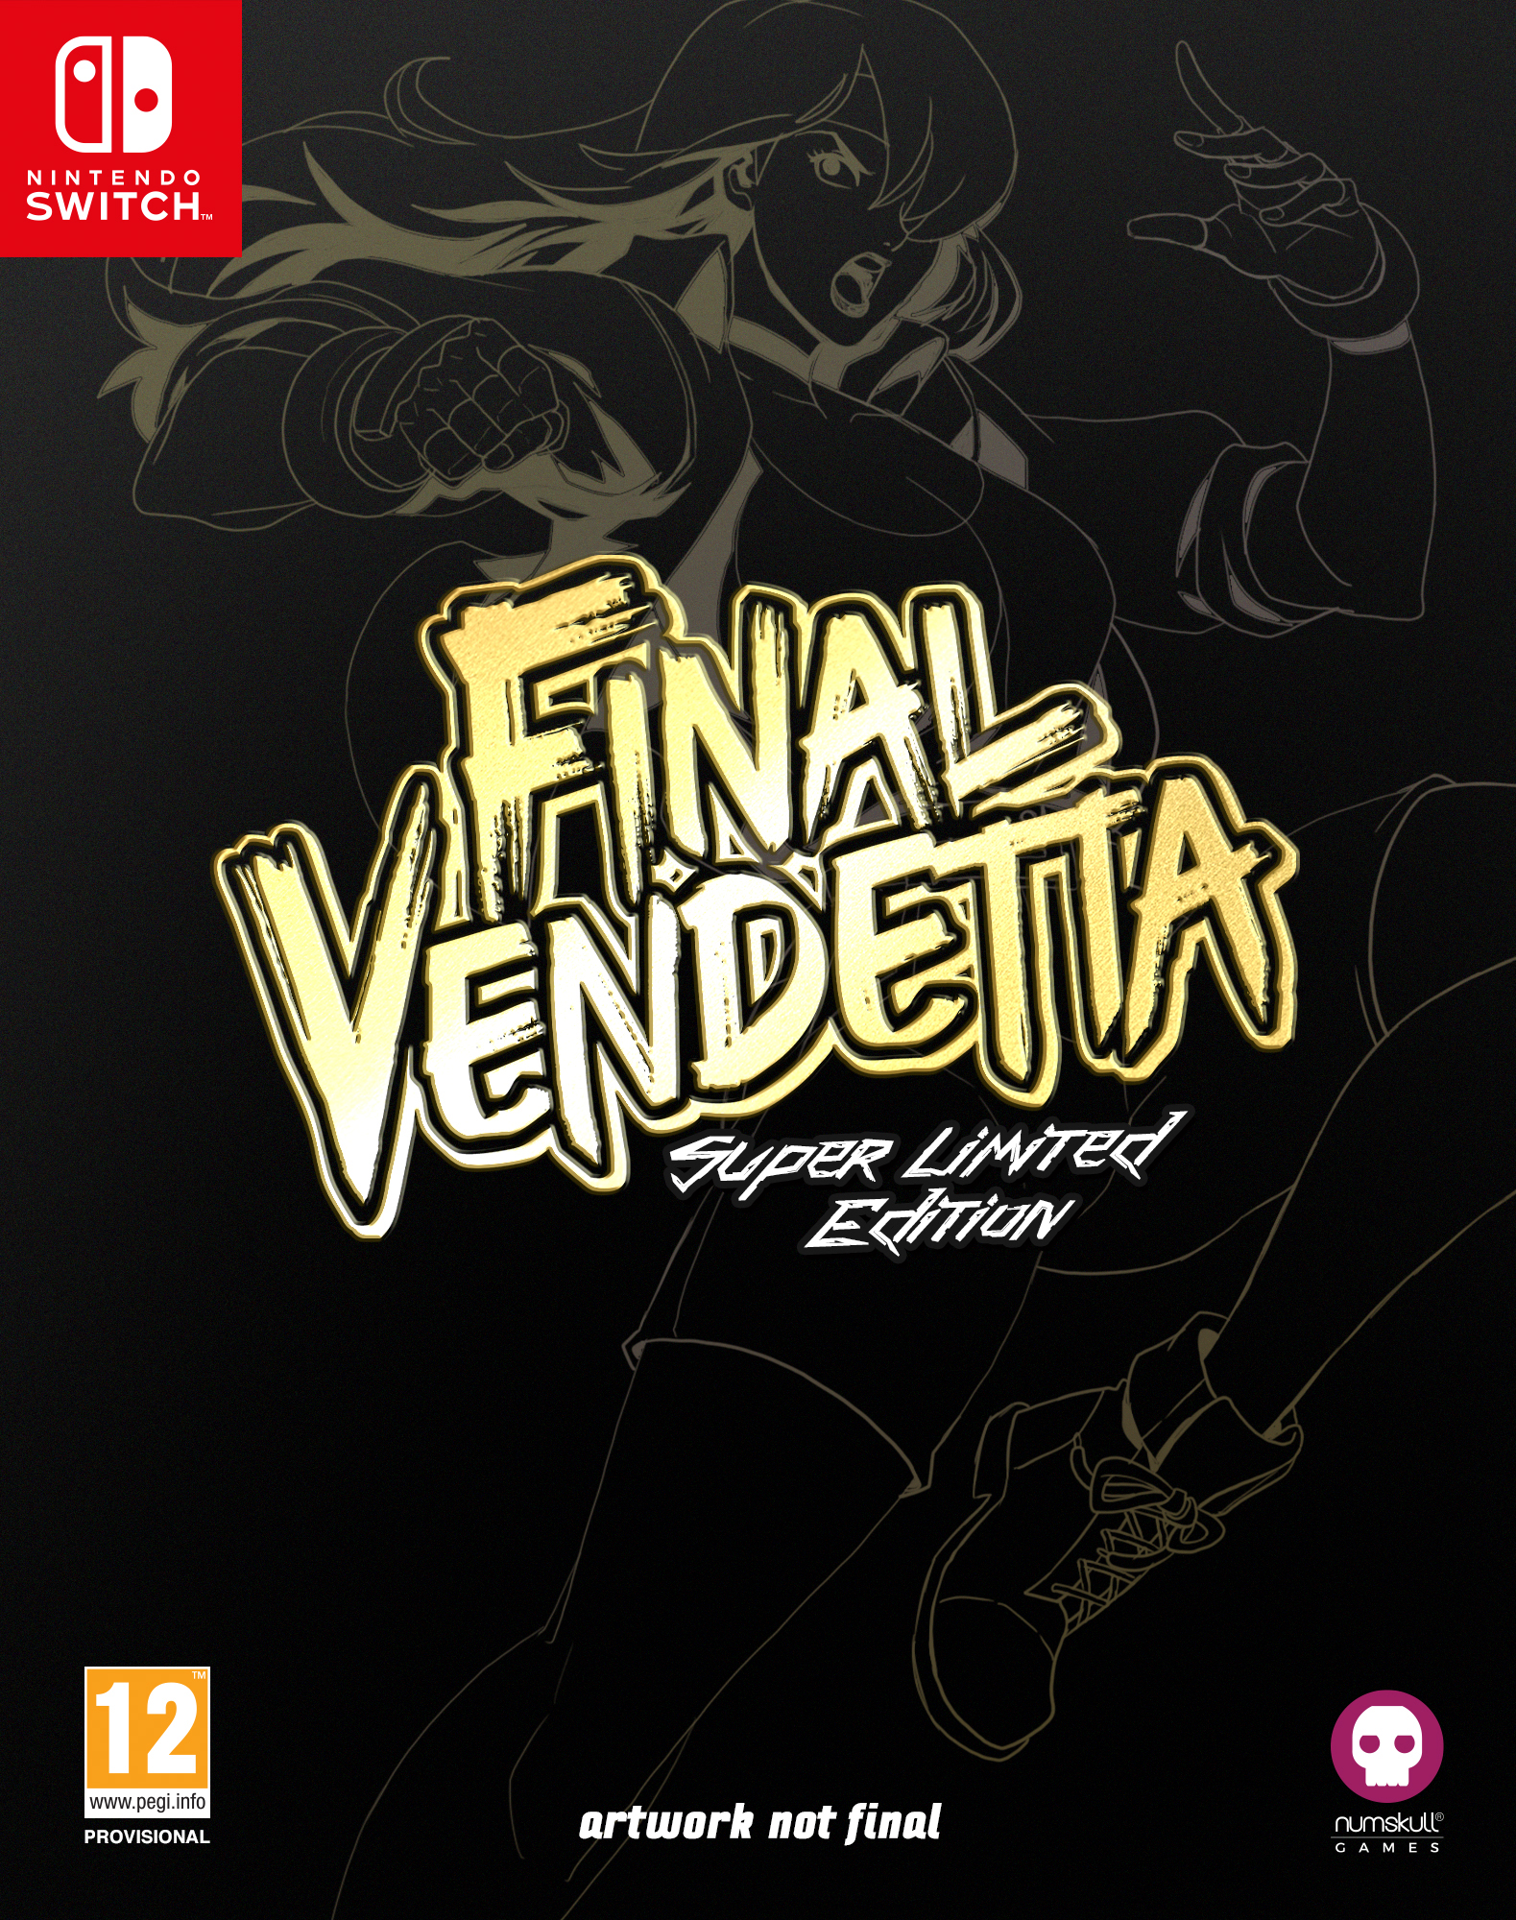 Final Vendetta Super Limited Edition